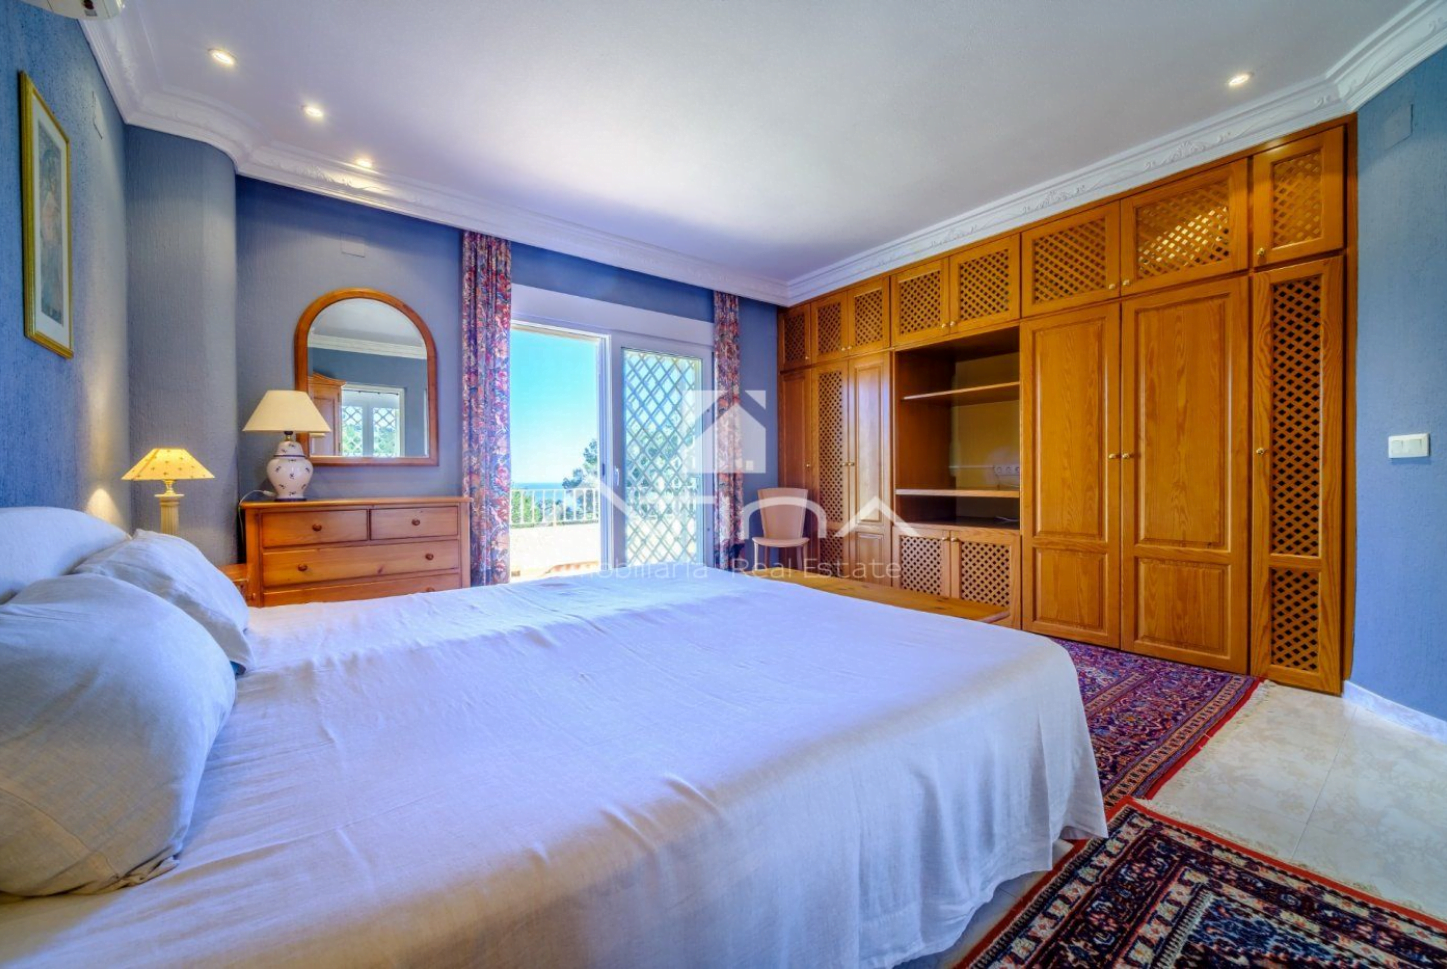 Dormitorio con vistas al mar en esta villa de Jávea